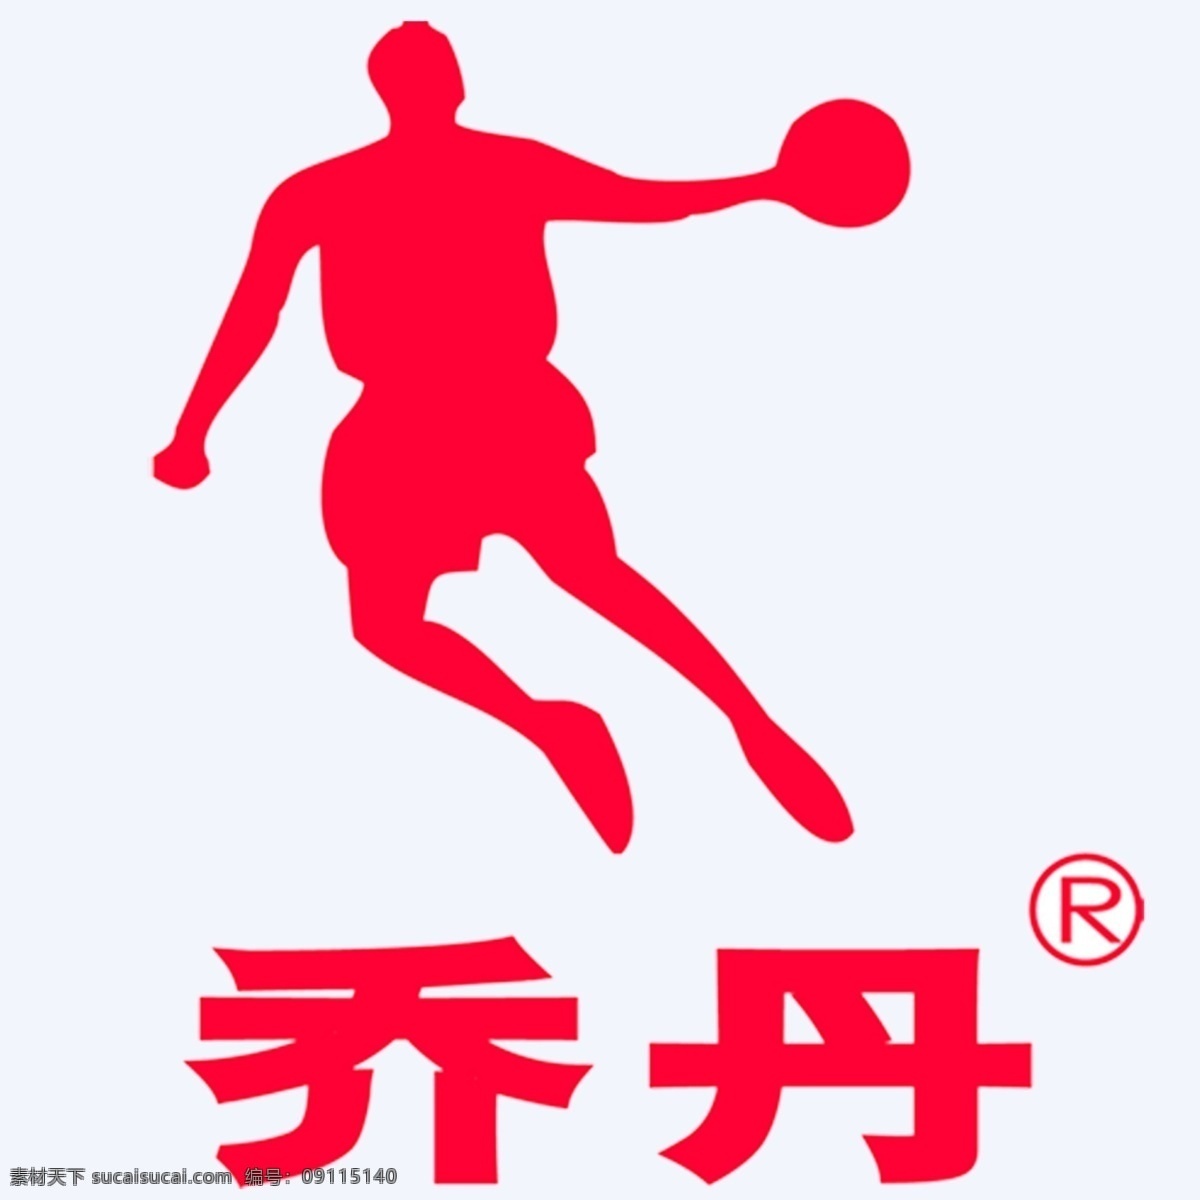 乔丹logo 乔丹 乔丹标志 乔丹标识 乔丹体育 乔丹服饰 企业logo 标志图标 企业 logo 标志